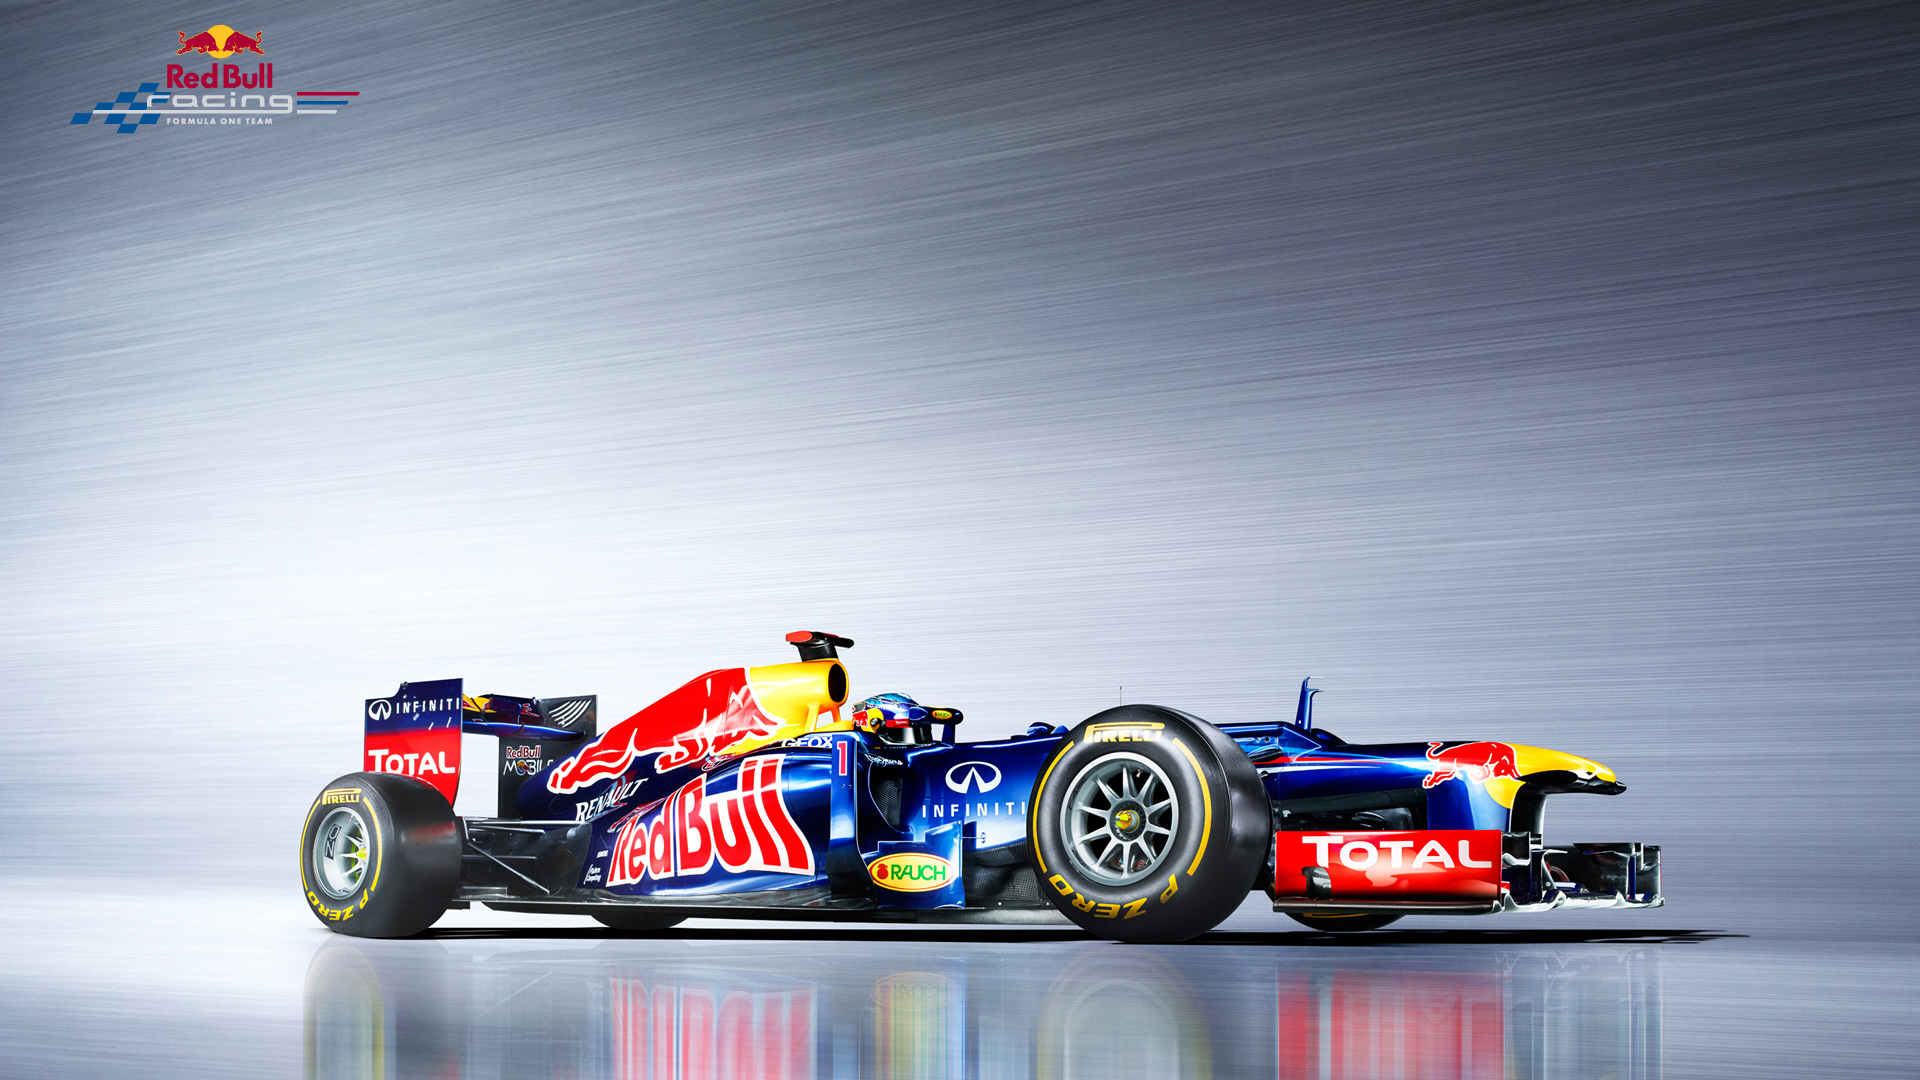  2012 Red Bull Racing RB8 Wallpaper.